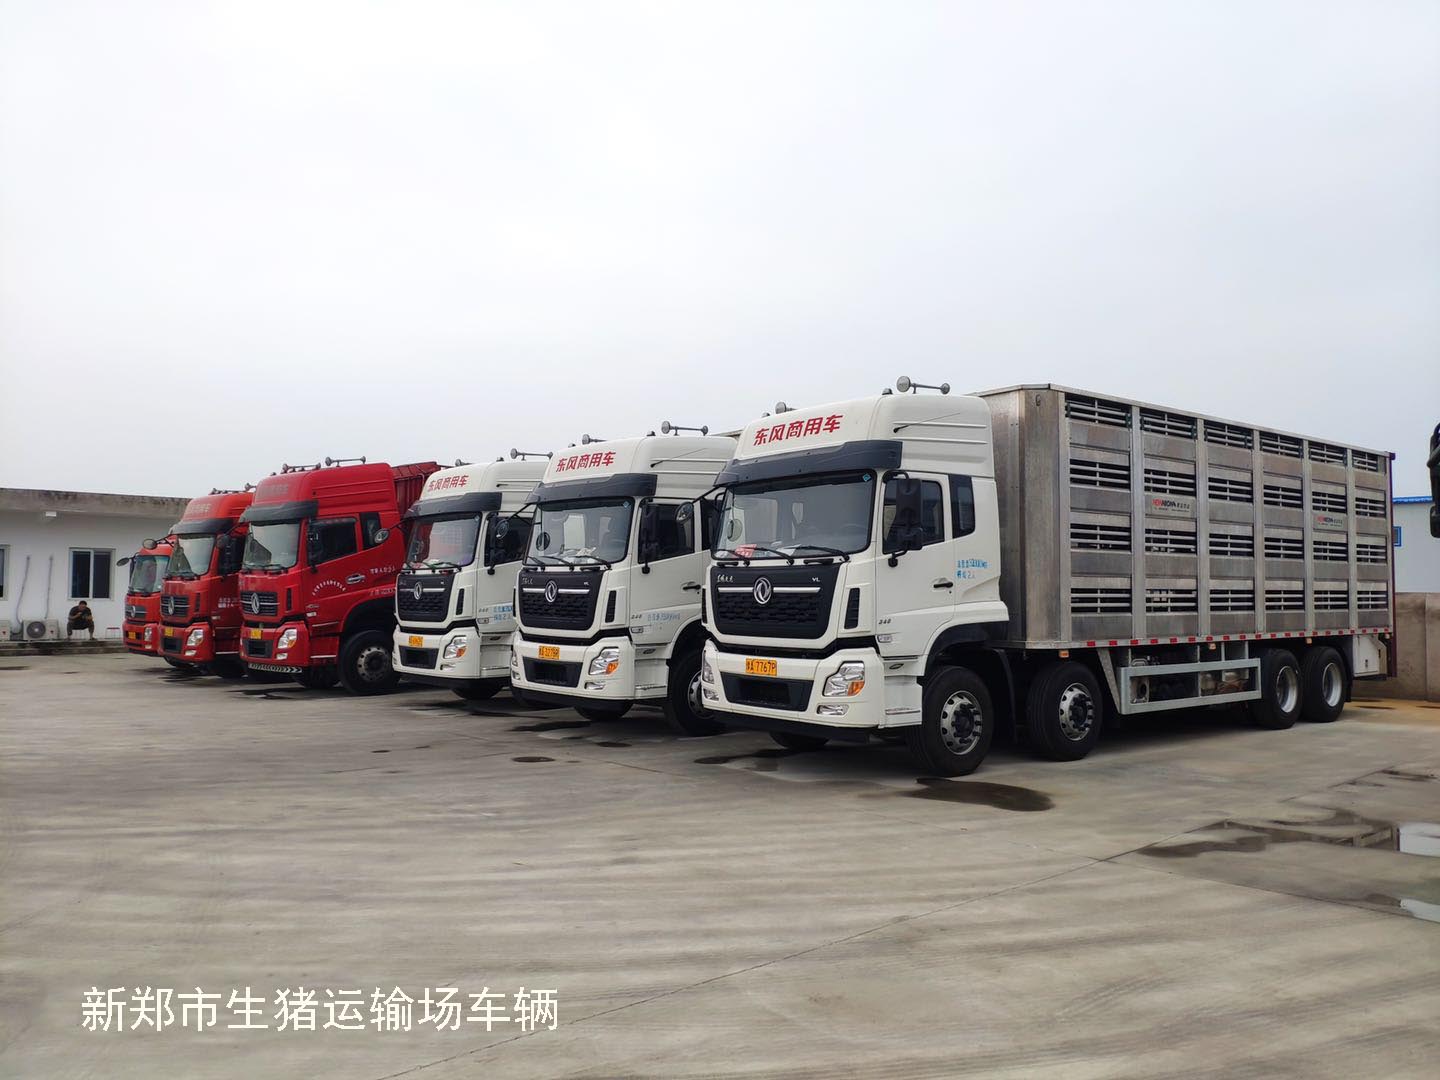 新郑市严管严控生猪运输车辆，运输车已装gps监控系统